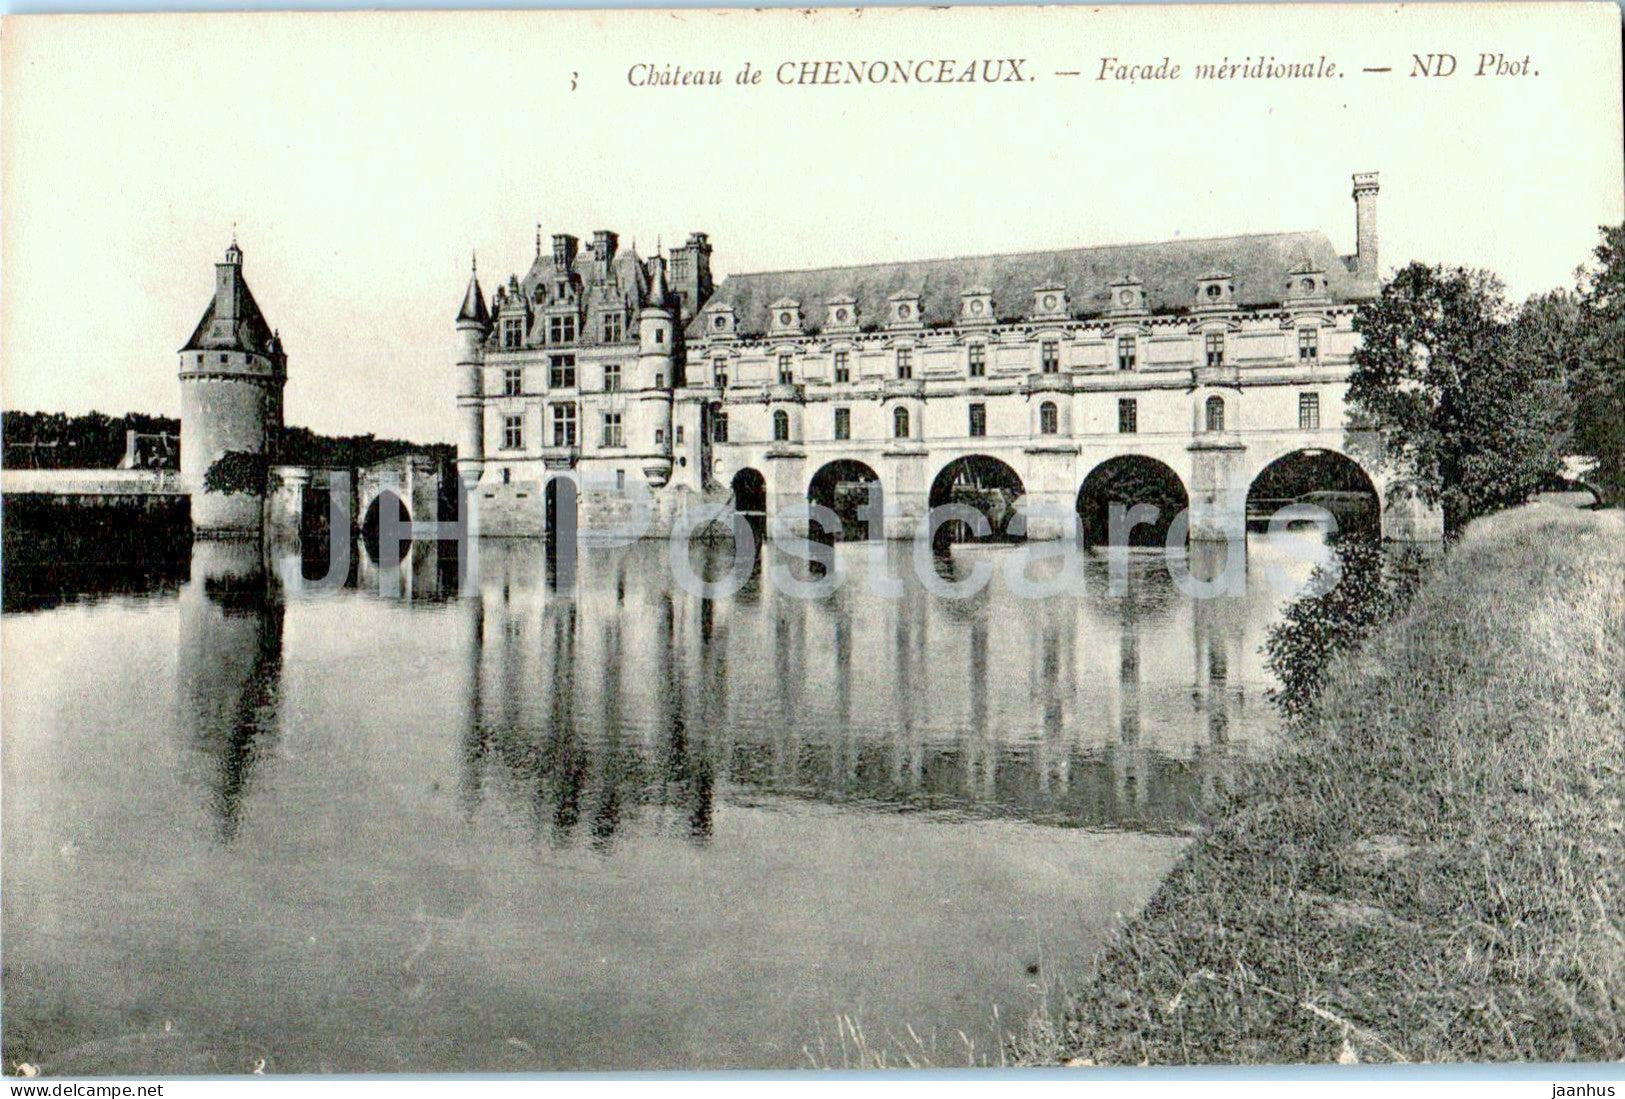 Chateau de Chenonceaux - Facade meridionale - 3 - castle - old postcard - France - unused - JH Postcards